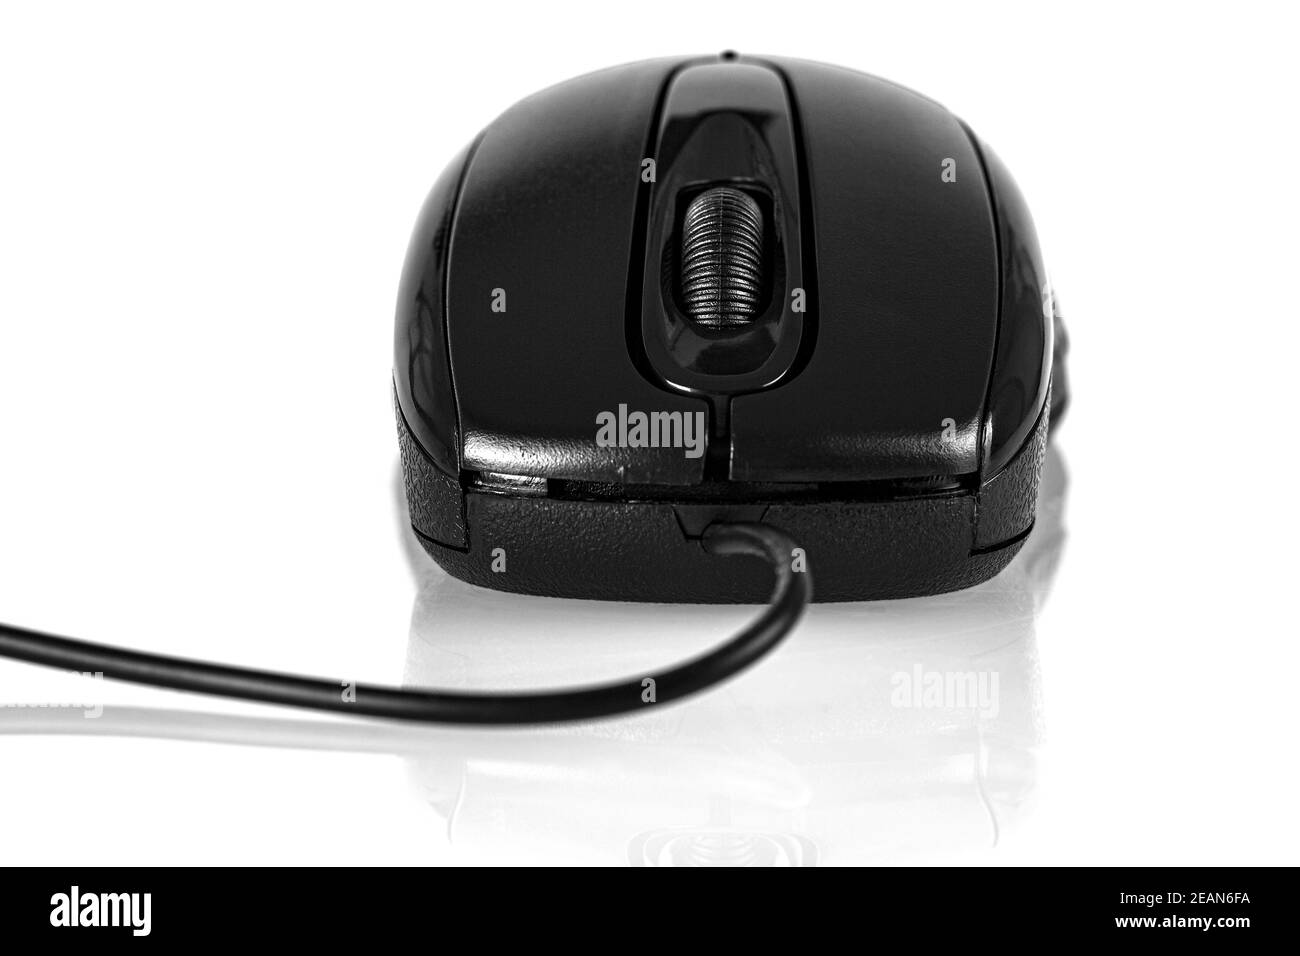 Schwarz Computer Maus auf weißem Hintergrund Stockfoto